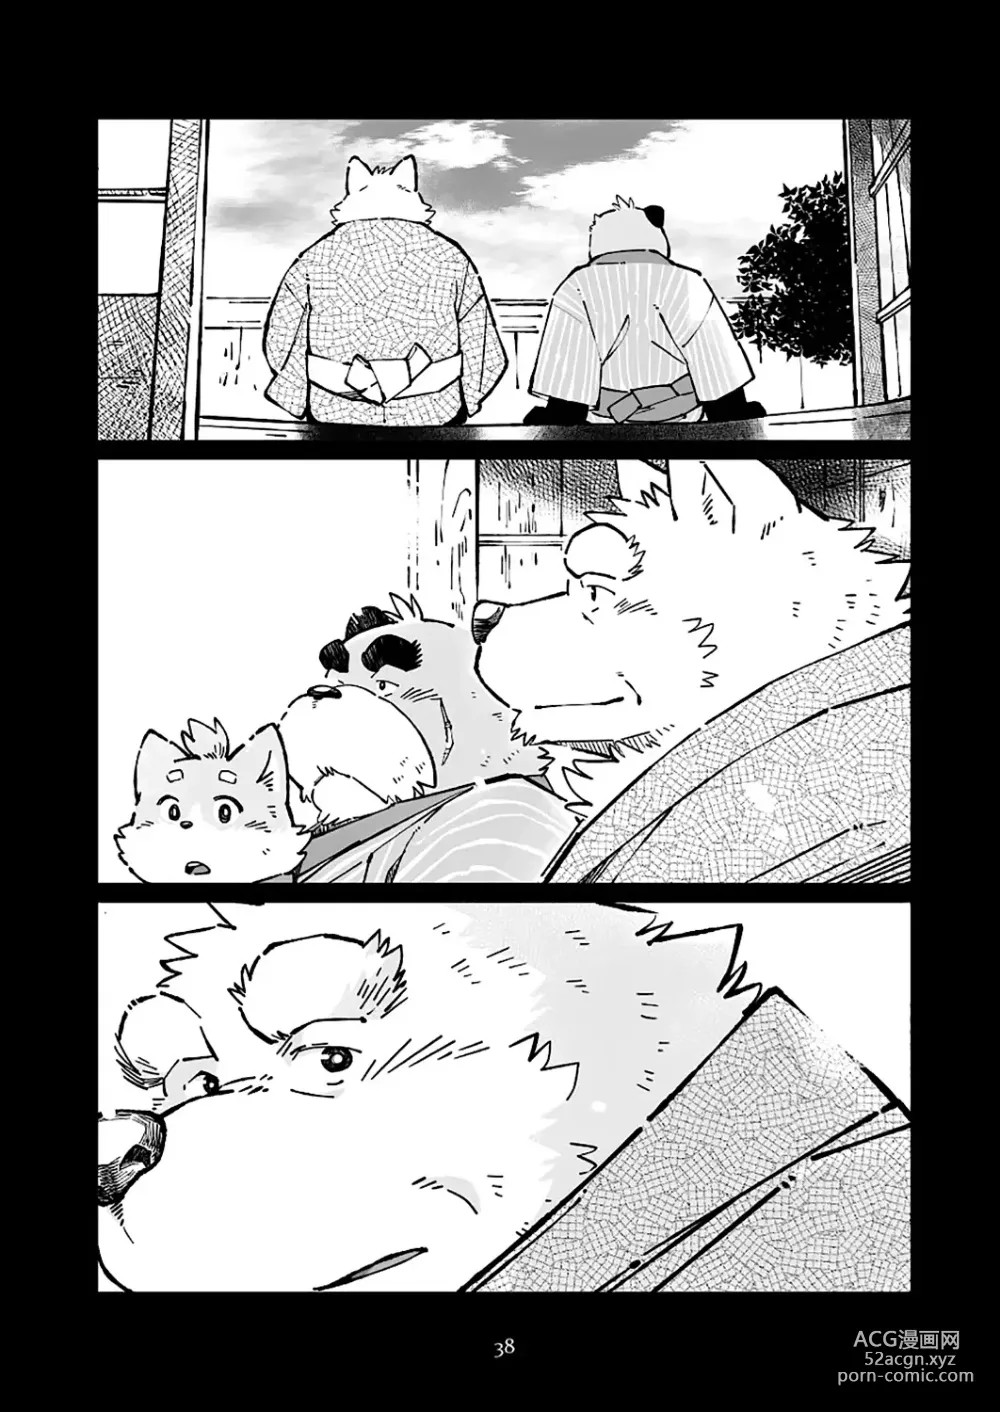 Page 38 of doujinshi 狗津原细见